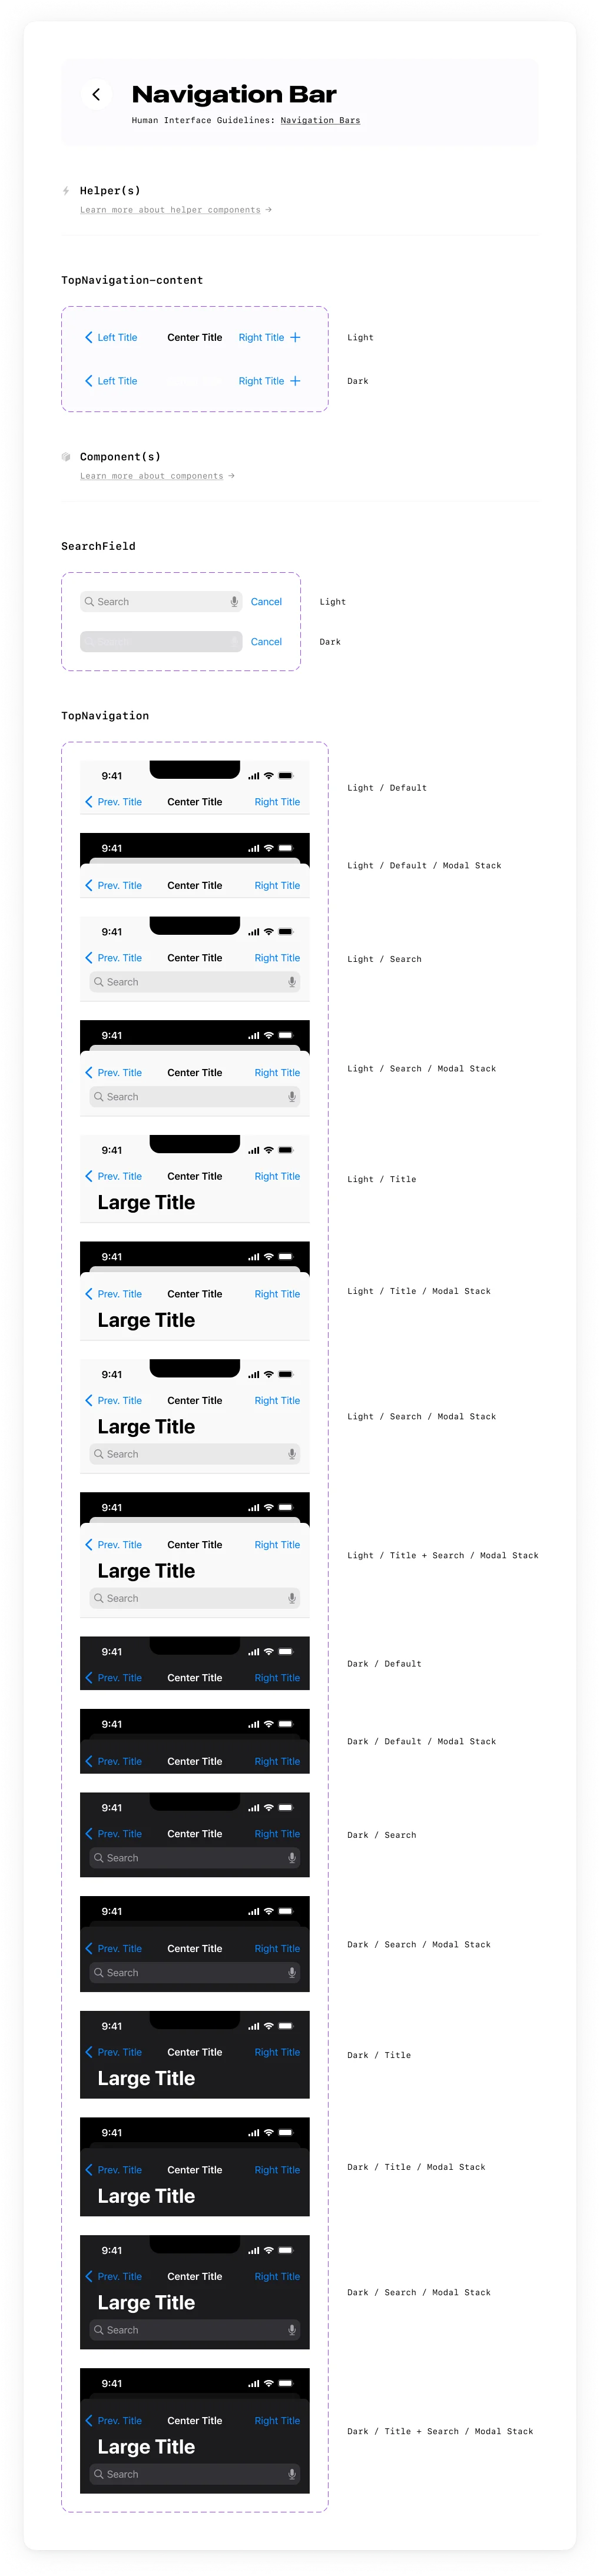 苹果IOS 16应用设计组件工具包-UI/UX、ui套件、主页、列表、卡片式、图表、地图、天气、播放器、数据可视化-仪表板、日历、聊天、表单-到位啦UI